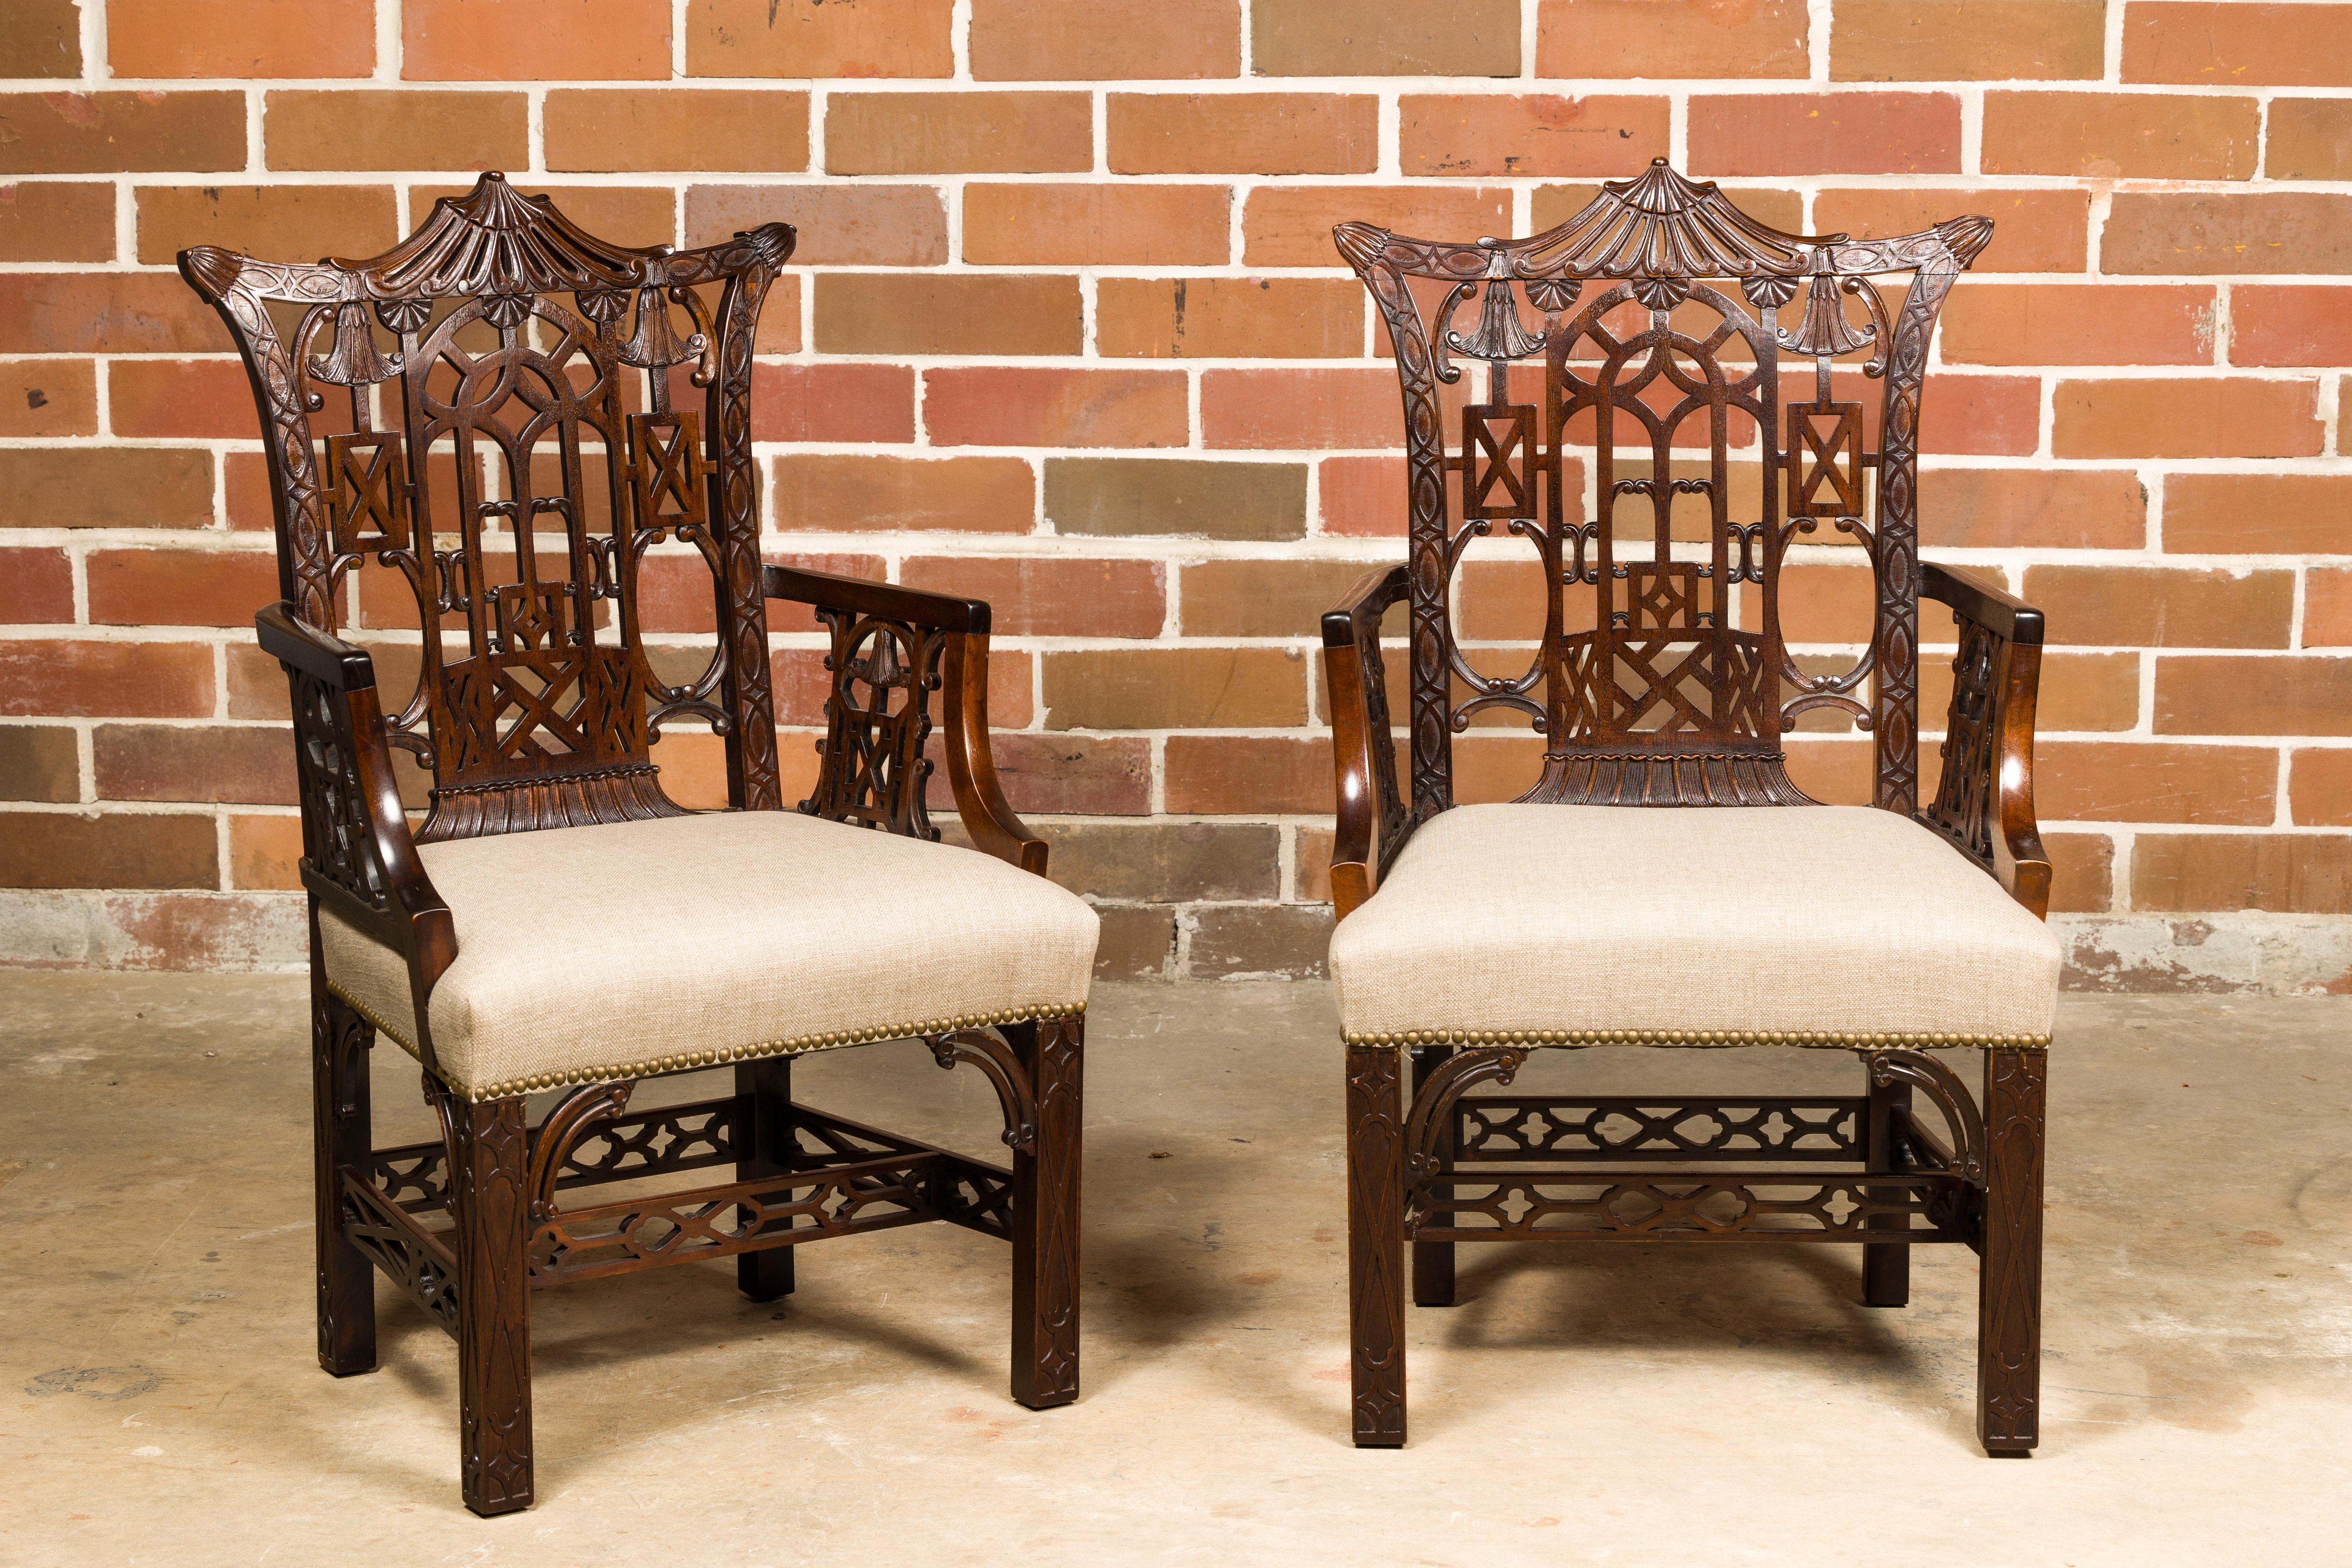 Paire de fauteuils anglais Chippendale du XIXe siècle au décor richement sculpté et recouvert d'une nouvelle tapisserie en lin personnalisée. Ces fauteuils anglais Chippendale, datant du XIXe siècle, sont un splendide témoignage de l'élégance